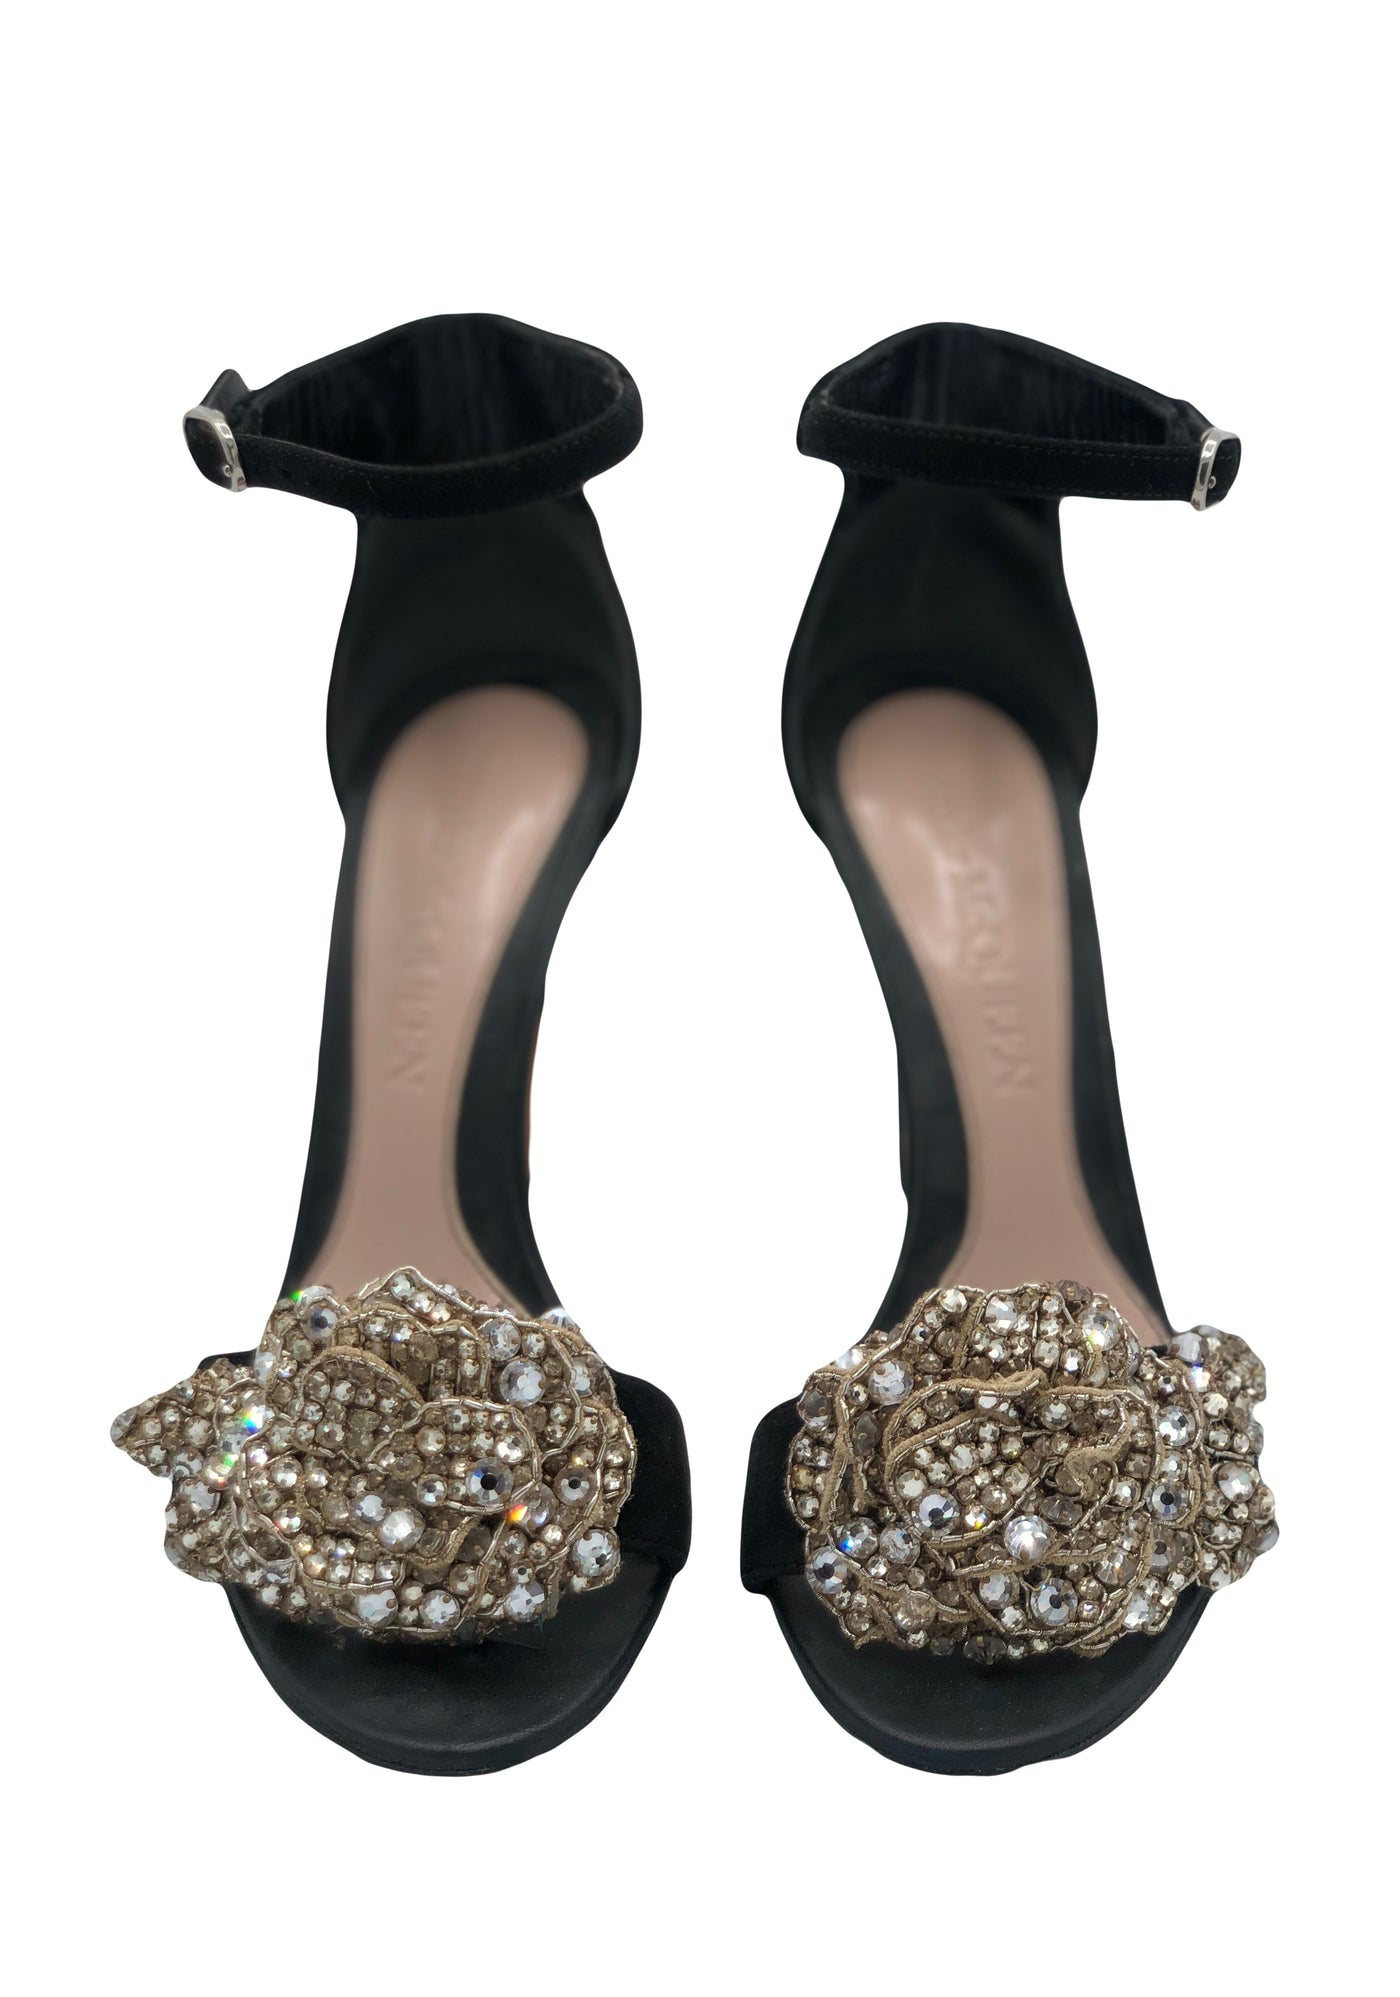 Alexander MCQUEEN Embellished suede heels size 37.5